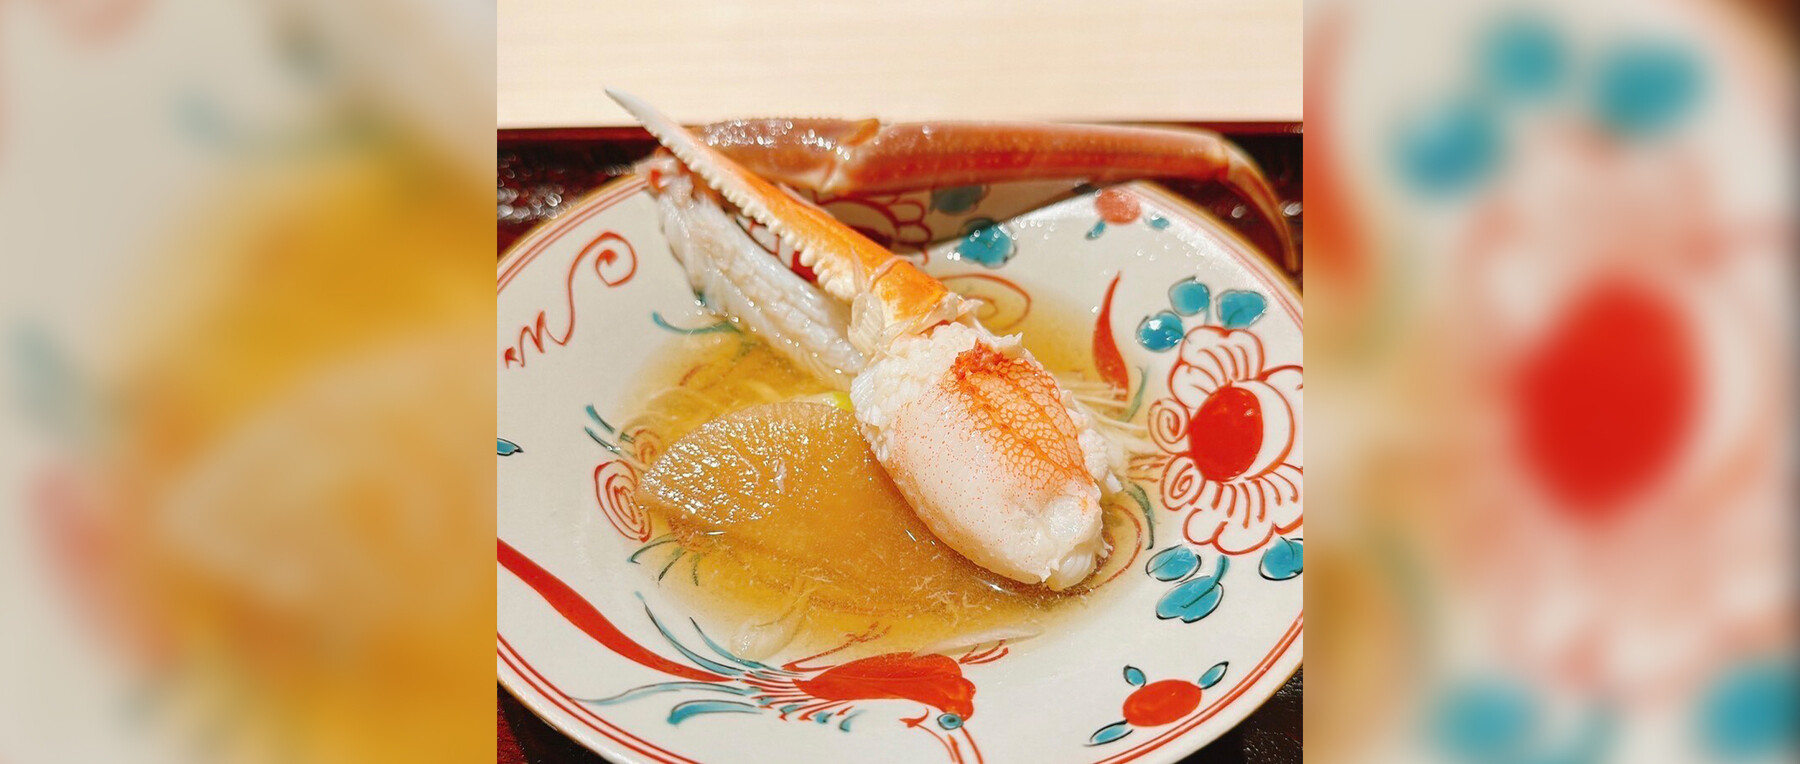 【Finished】【Noto Support Friendship Restaurant】Ginza Kanimatsu × Sushi Imafuku's images6